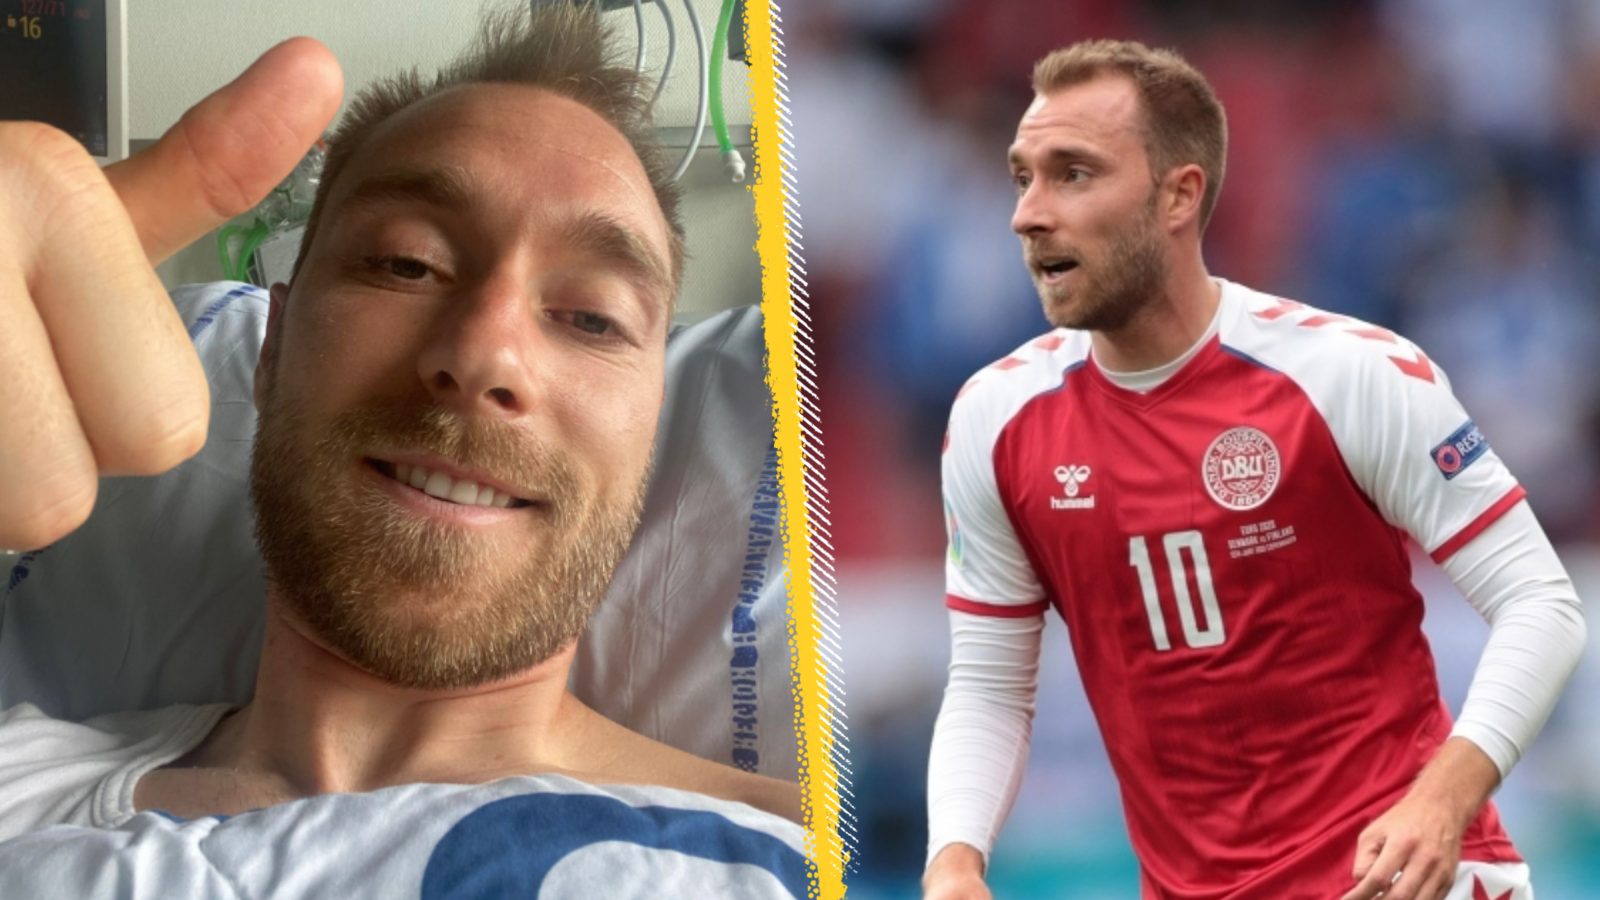 Danish footballer, Christian Eriksen before and after his sudden cardiac arrest